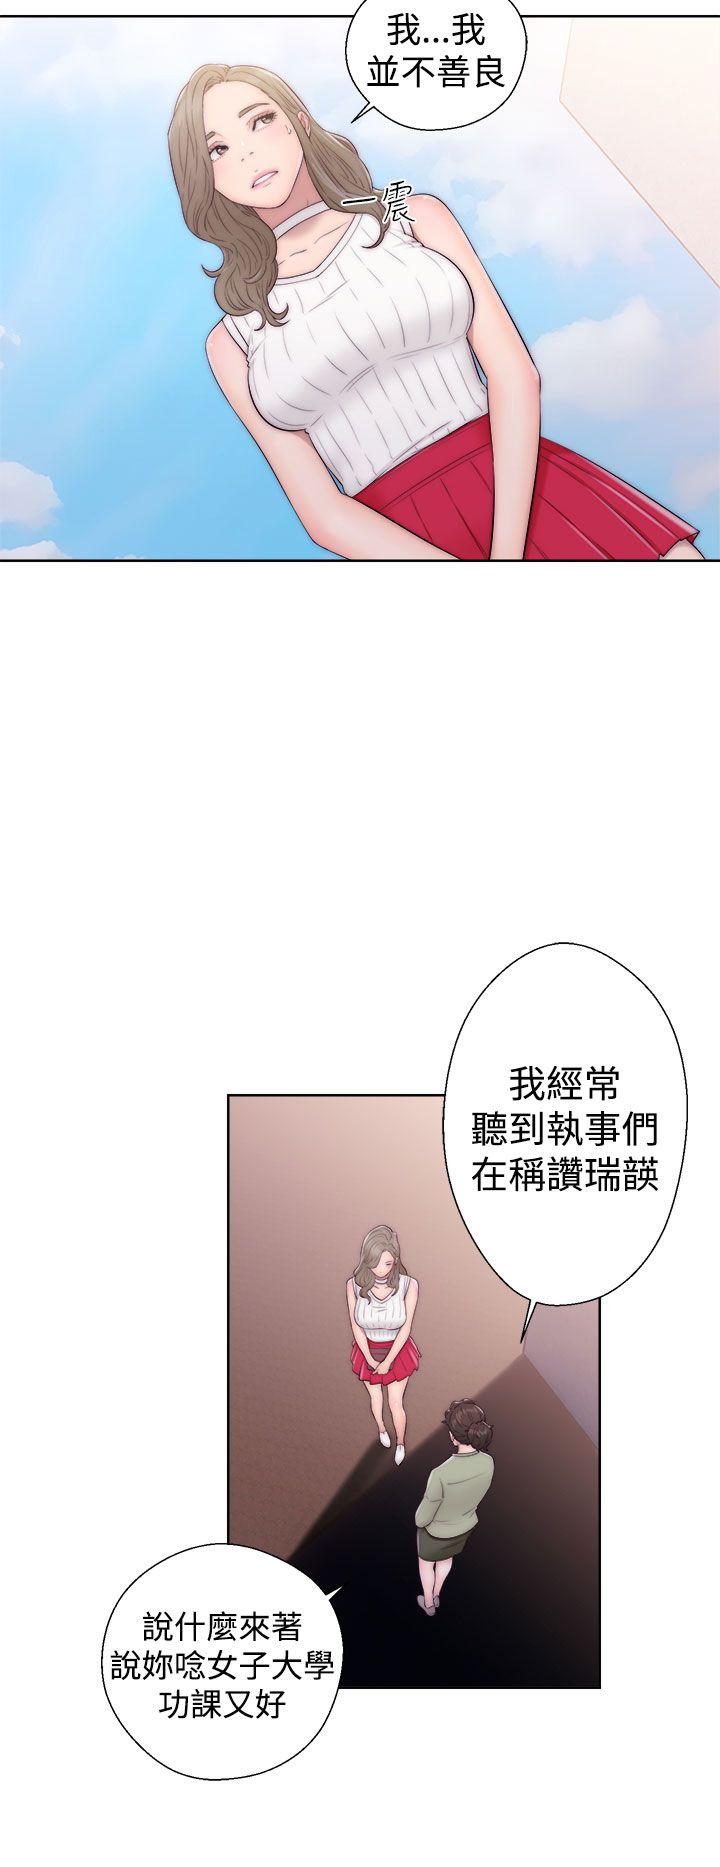 解禁:初始的快感  第35话 漫画图片4.jpg